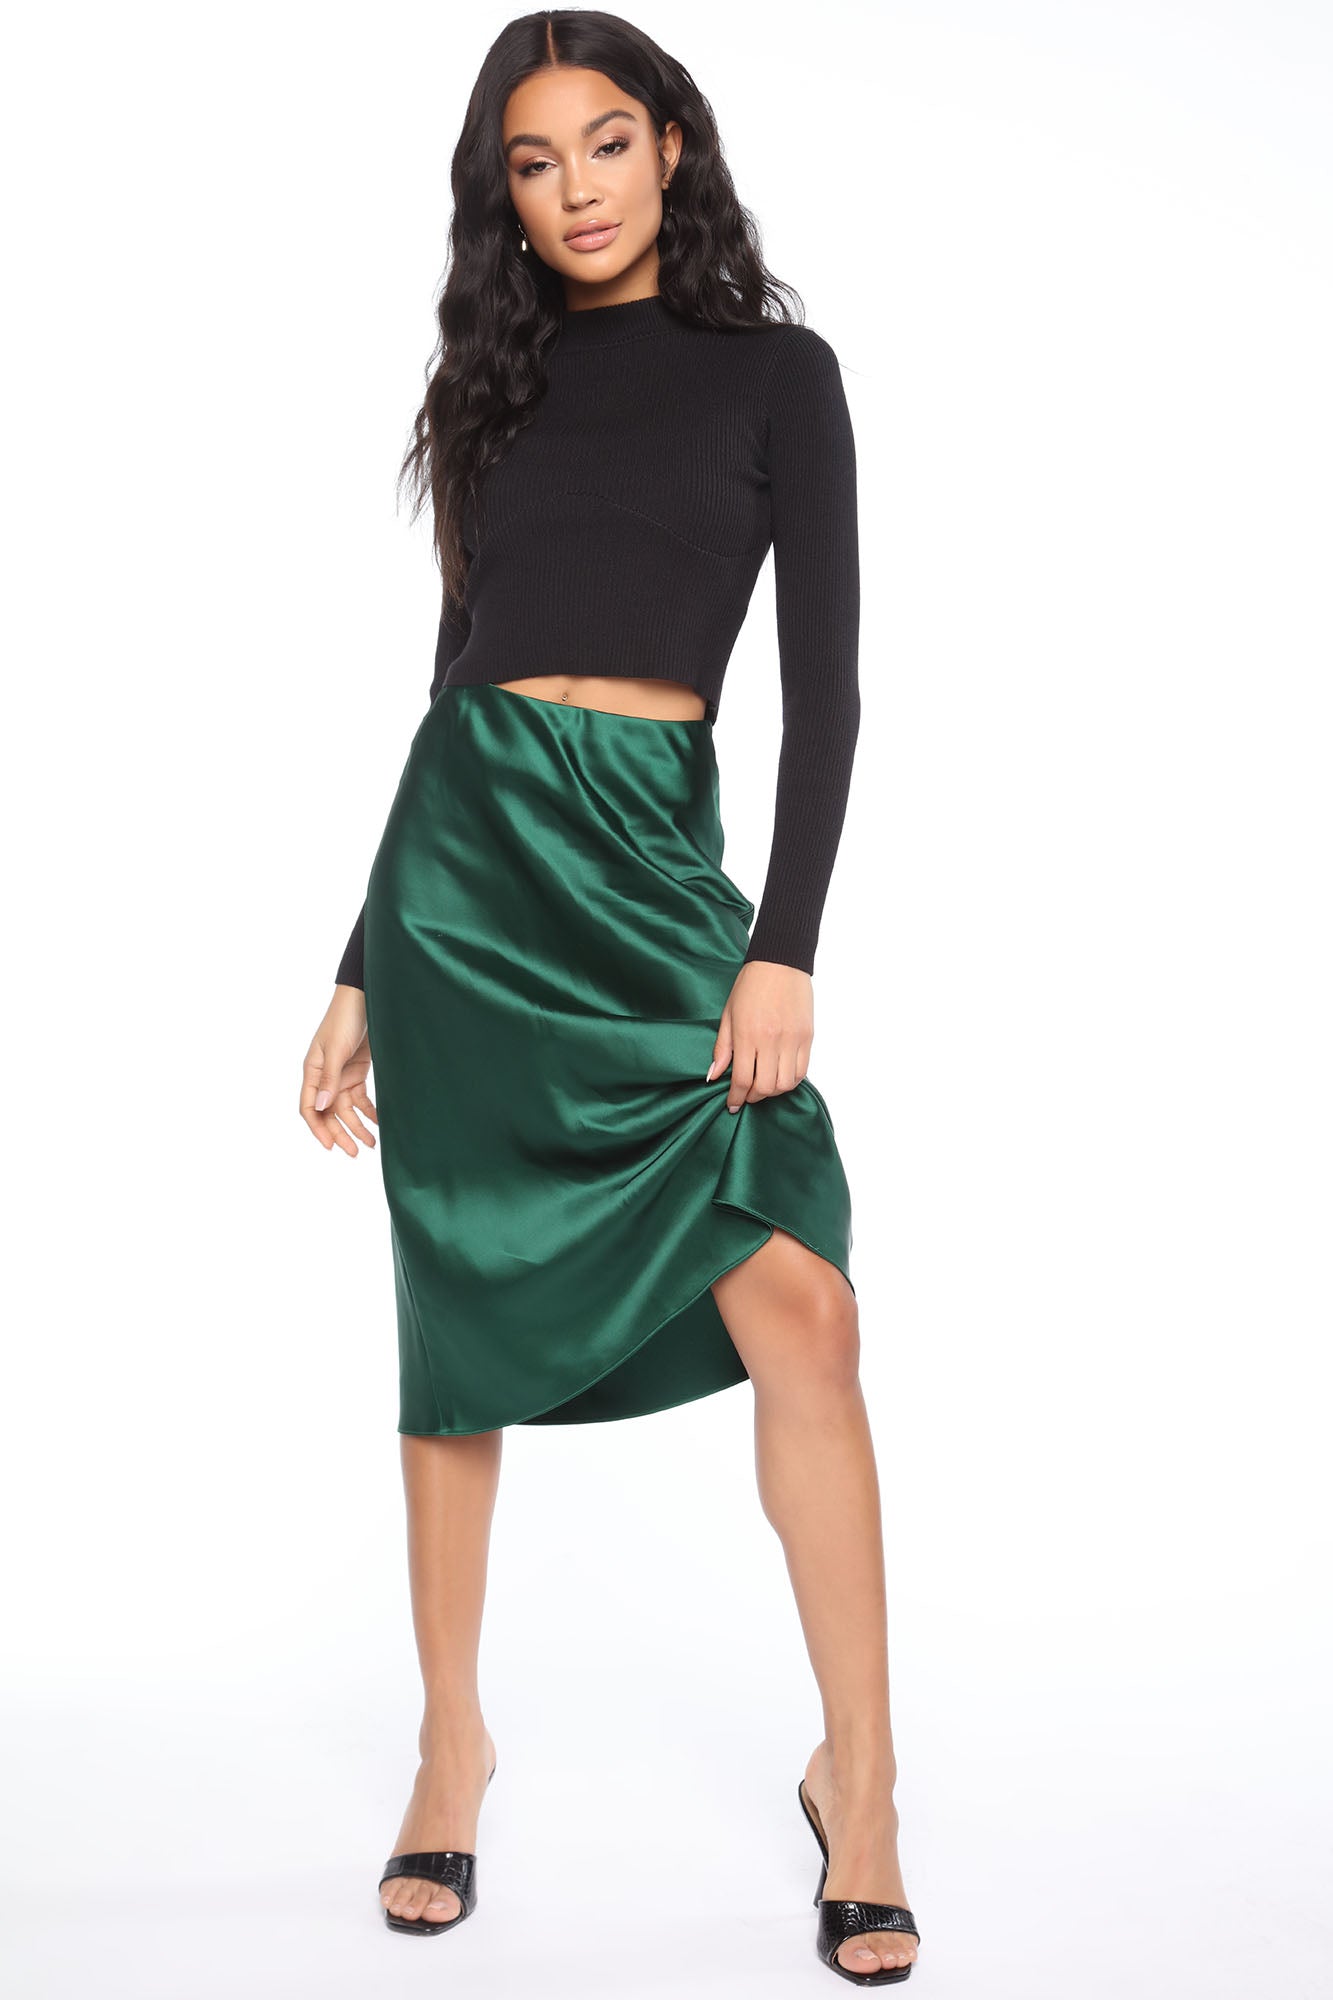 Emily Satin Slip Skirt - Hunter – Fashion Nova